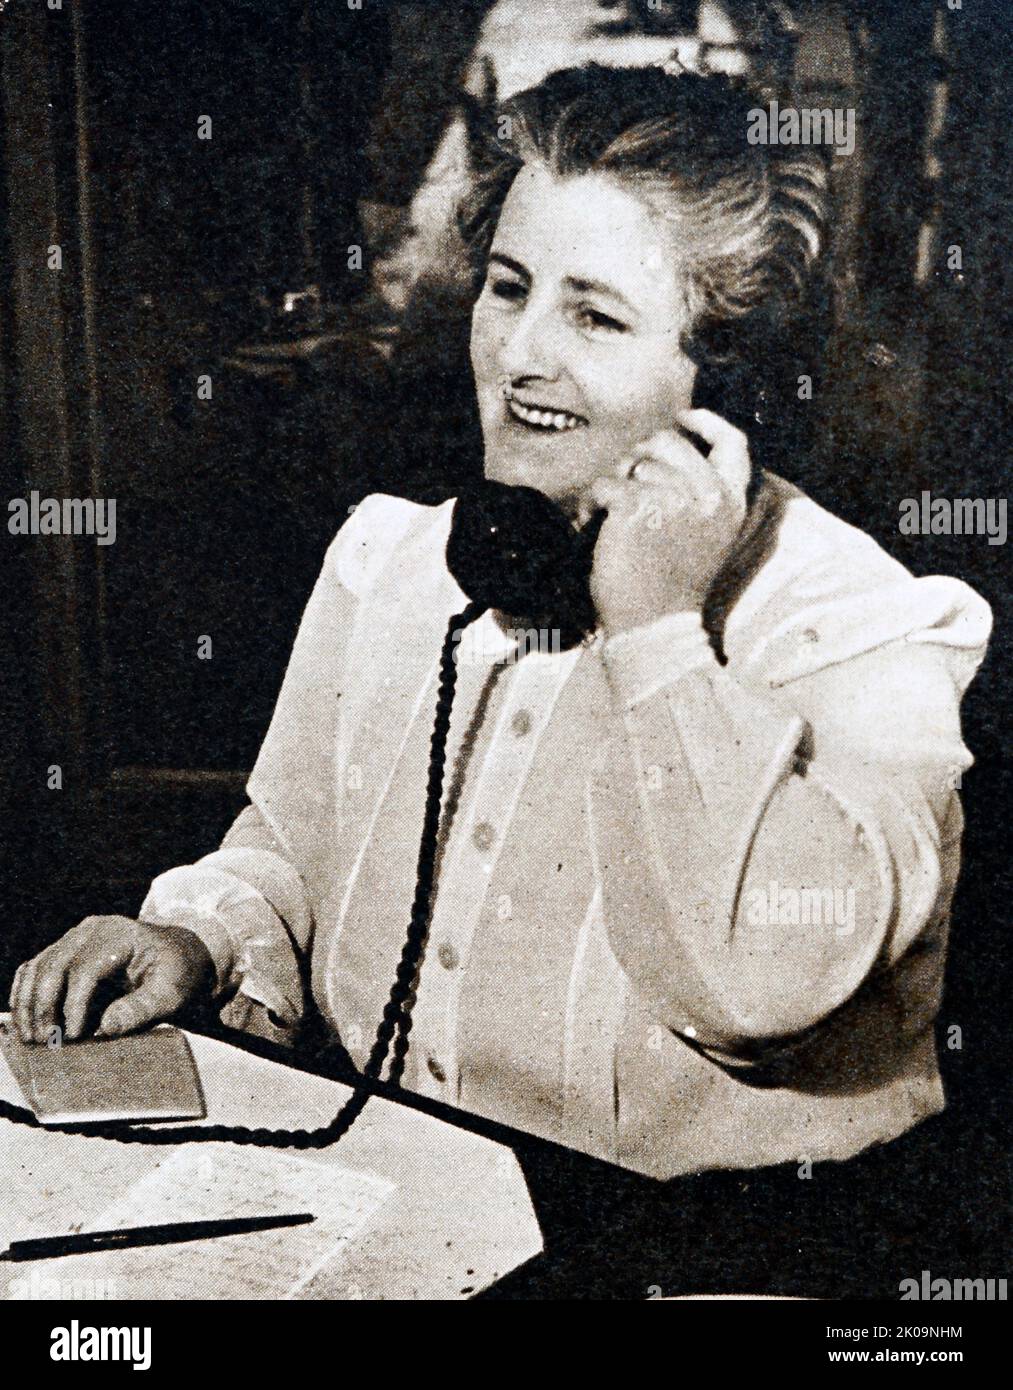 Dame Enid Muriel Lyons AD, GBE (née Burnell; 9 juillet 1897 - 2 septembre 1981) était une femme politique australienne qui a été la première femme élue à la Chambre des représentants et la première femme à siéger au Cabinet fédéral. Avant sa propre carrière politique, elle était surtout connue comme l'épouse de Joseph Lyons, premier ministre d'Australie (1932-1939) et premier ministre de Tasmanie (1923-1928). Banque D'Images